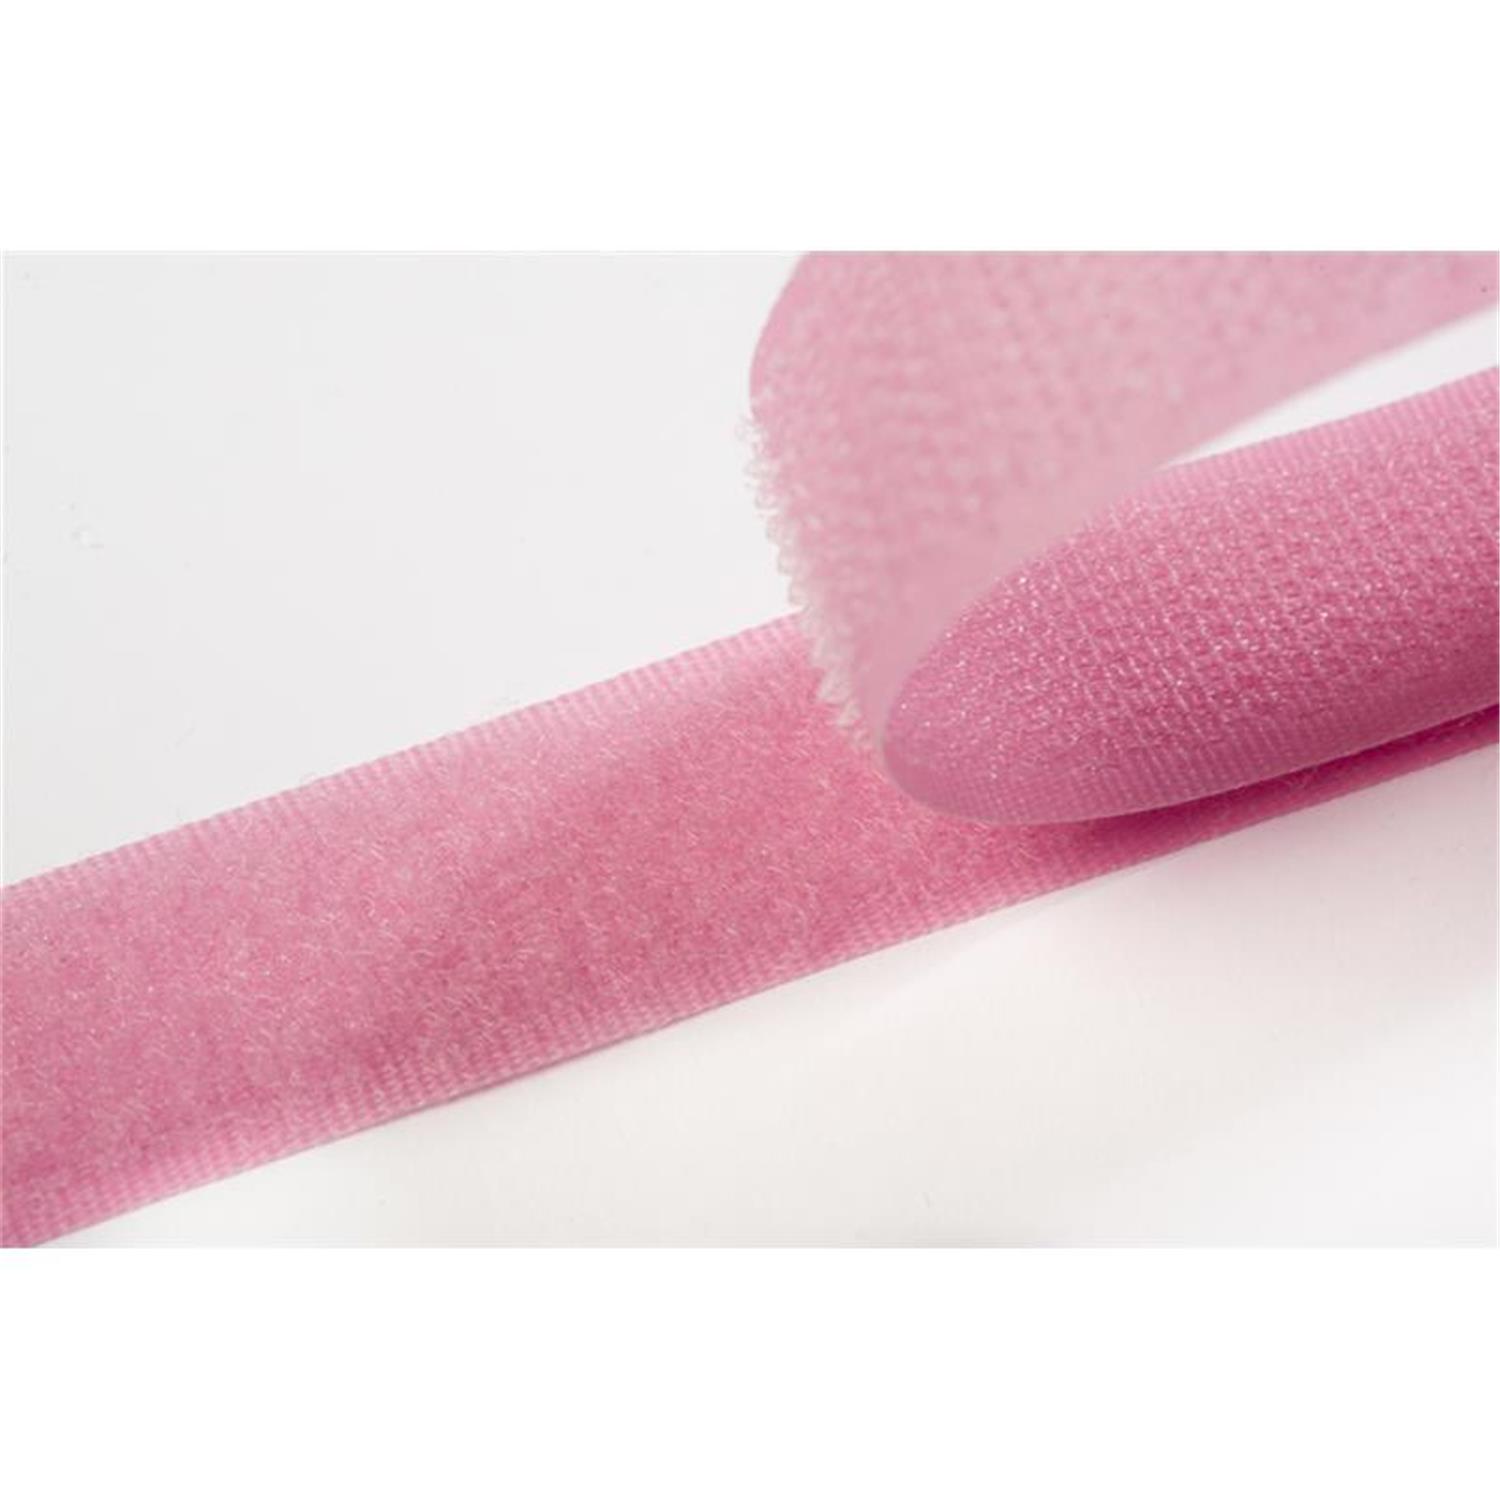 Klettband zum aufnähen, 20 mm, rosa/pink #08 4 Meter